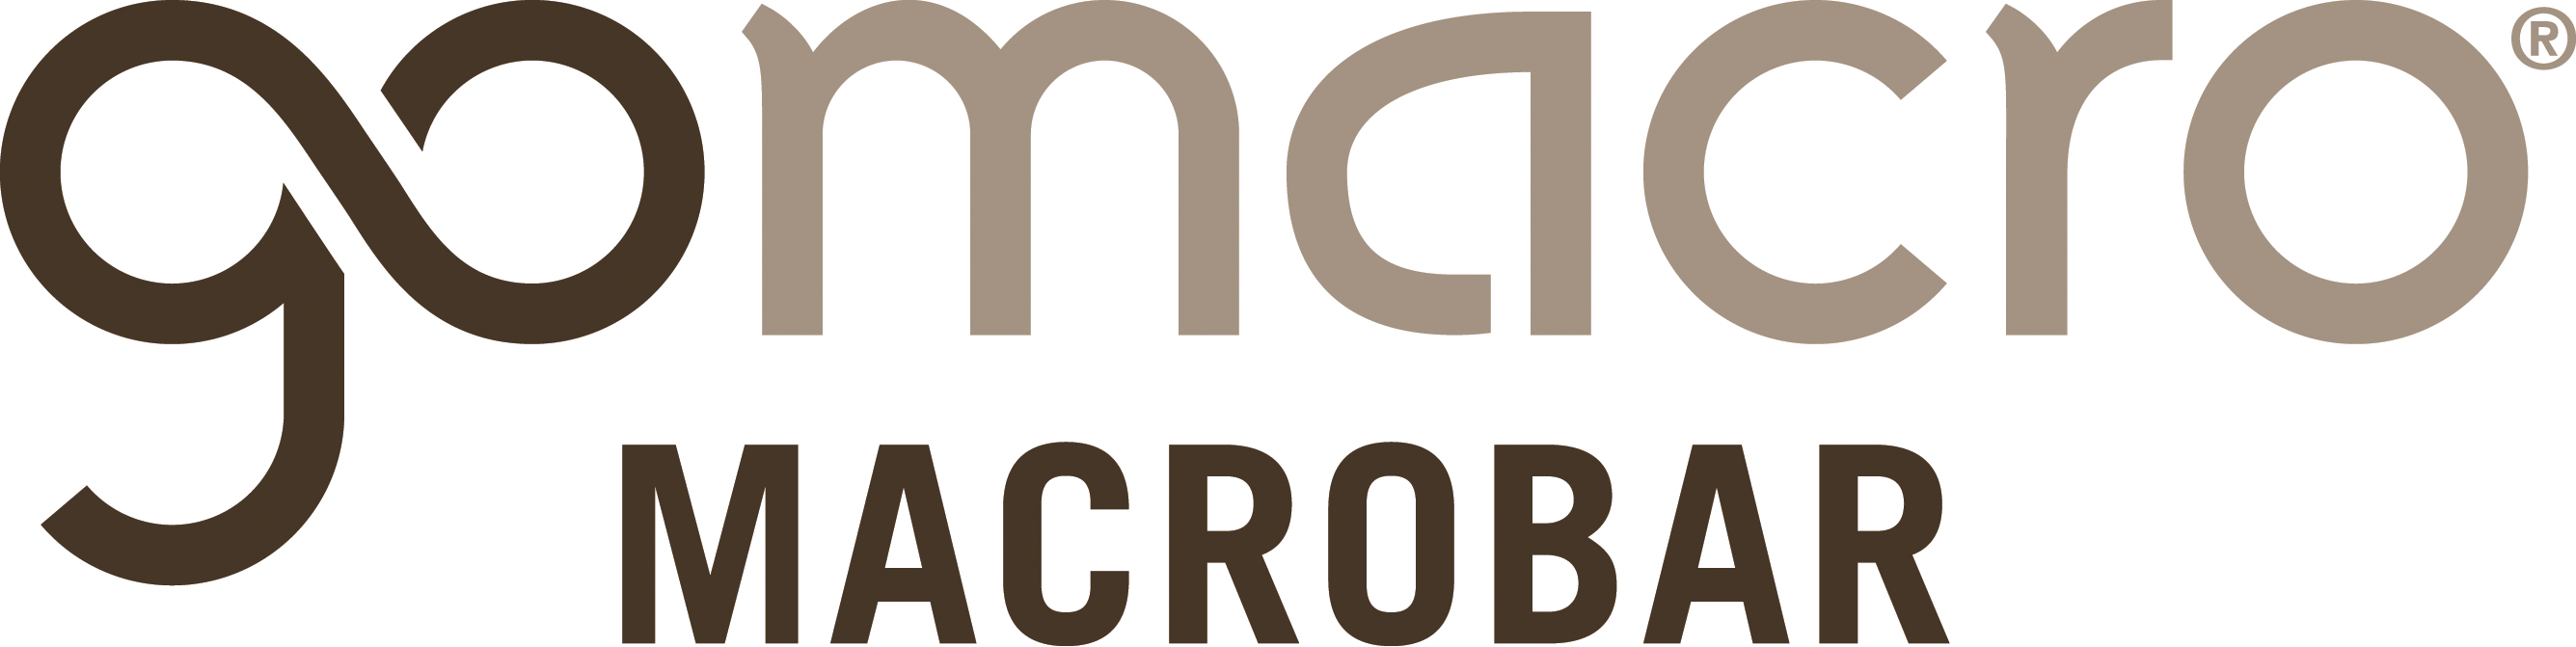 mdm macrobar logo